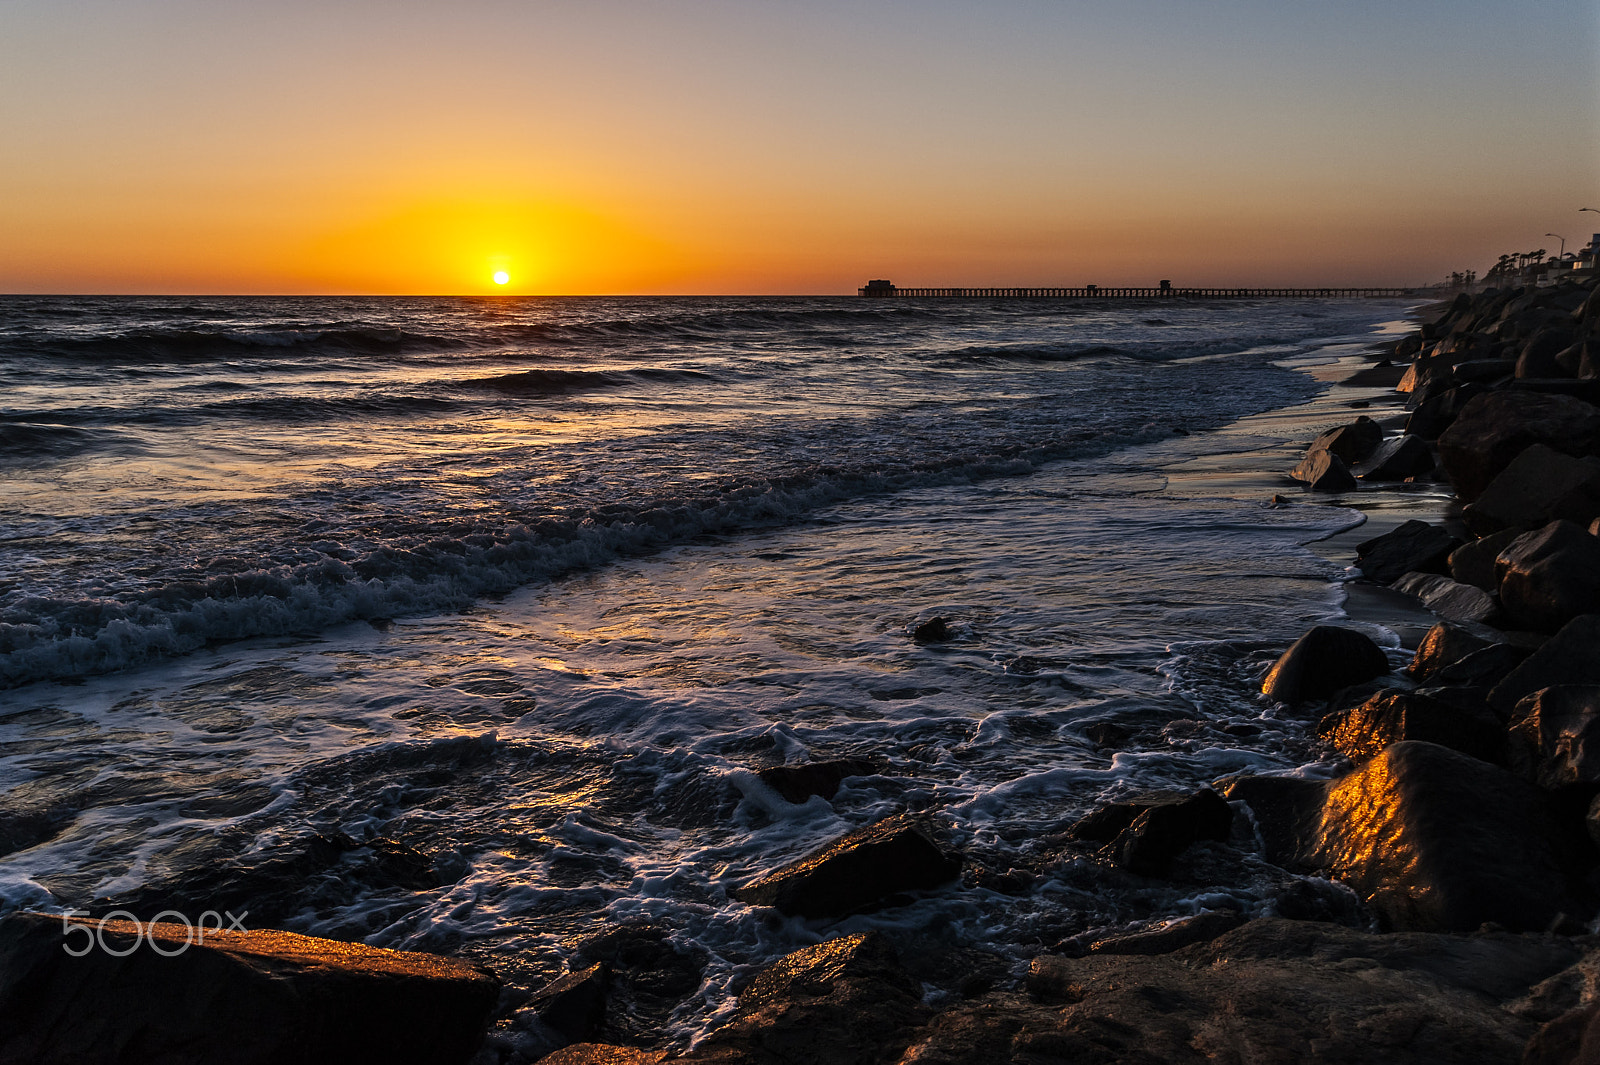 Nikon D700 + AF Zoom-Nikkor 24-120mm f/3.5-5.6D IF sample photo. Sunset on the rocks in oceanside photography